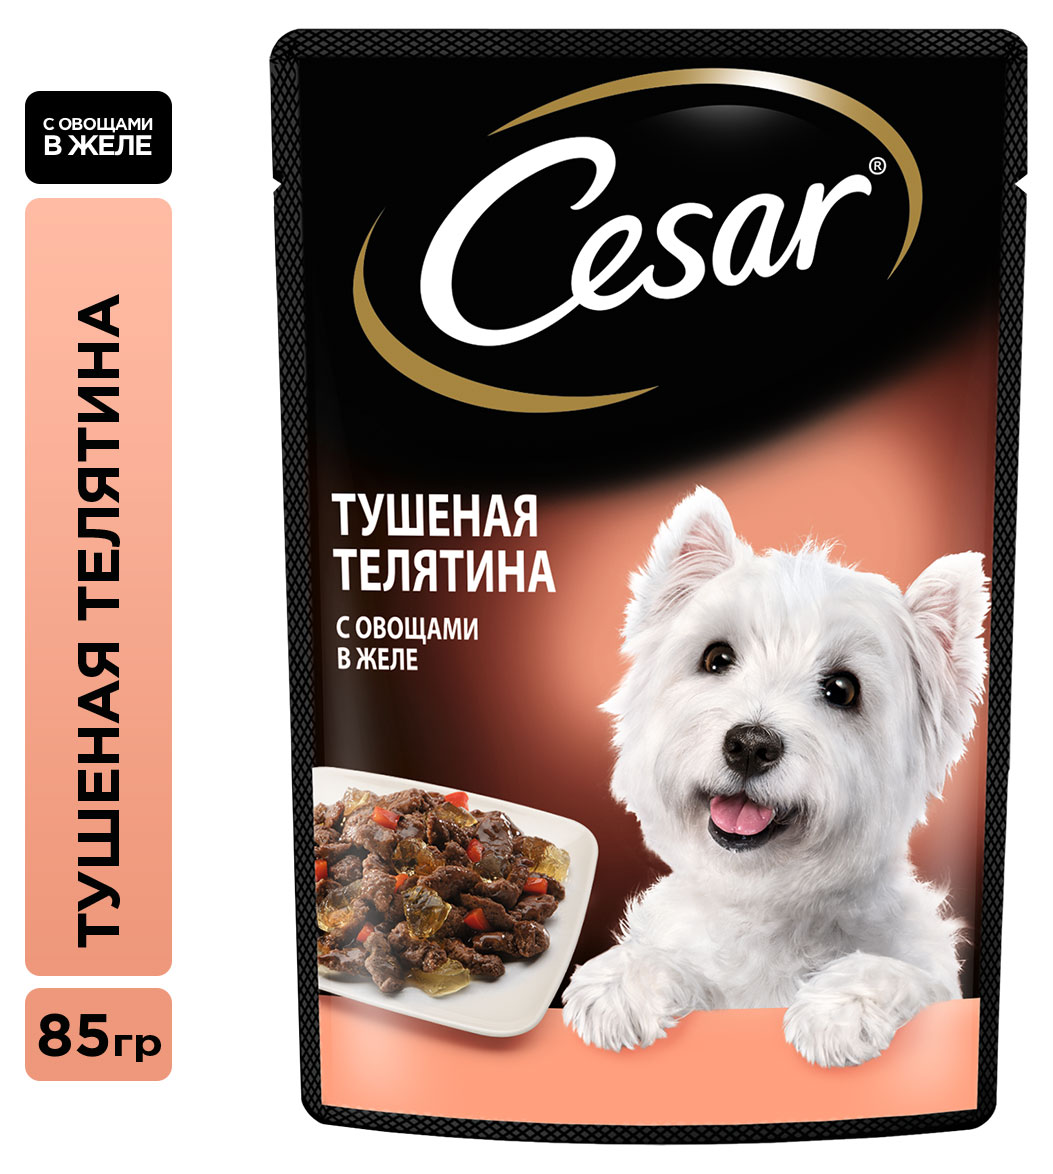 Cesar | Влажный корм для собак Cesar с тушеной телятиной и овощами в желе, 85 г